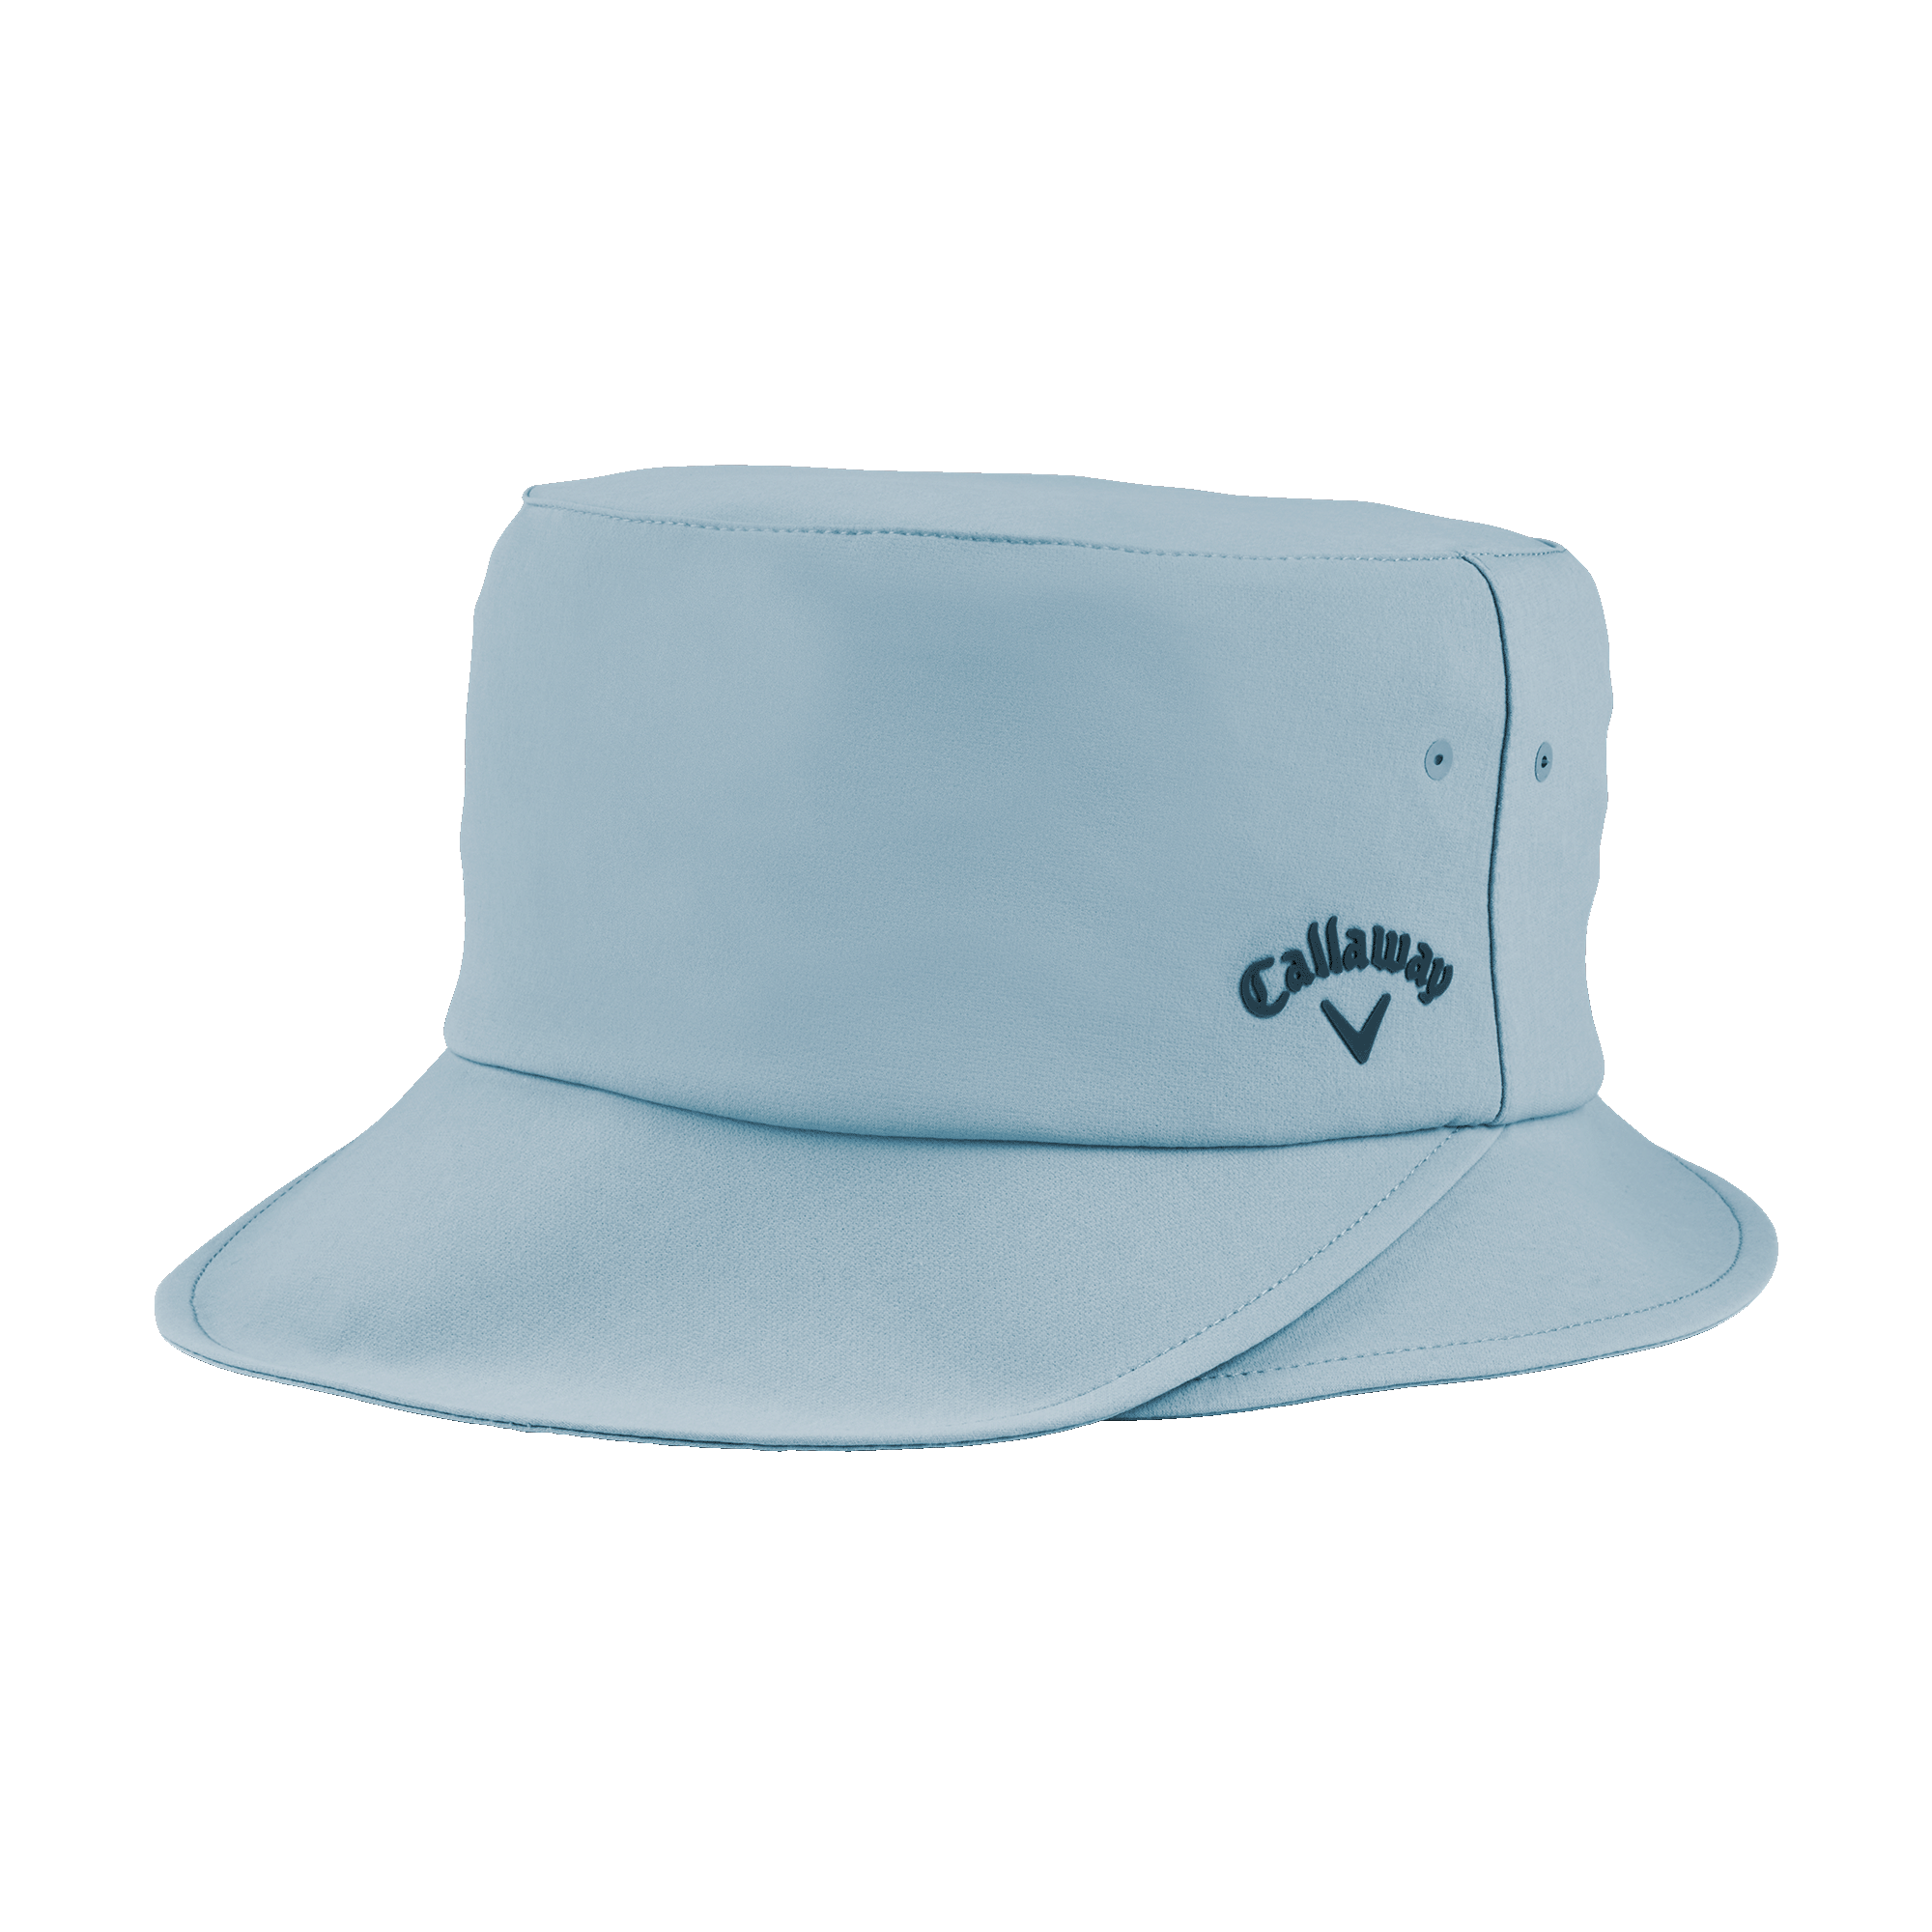 Callaway Women's Solar Noon Bucket Golf Hat